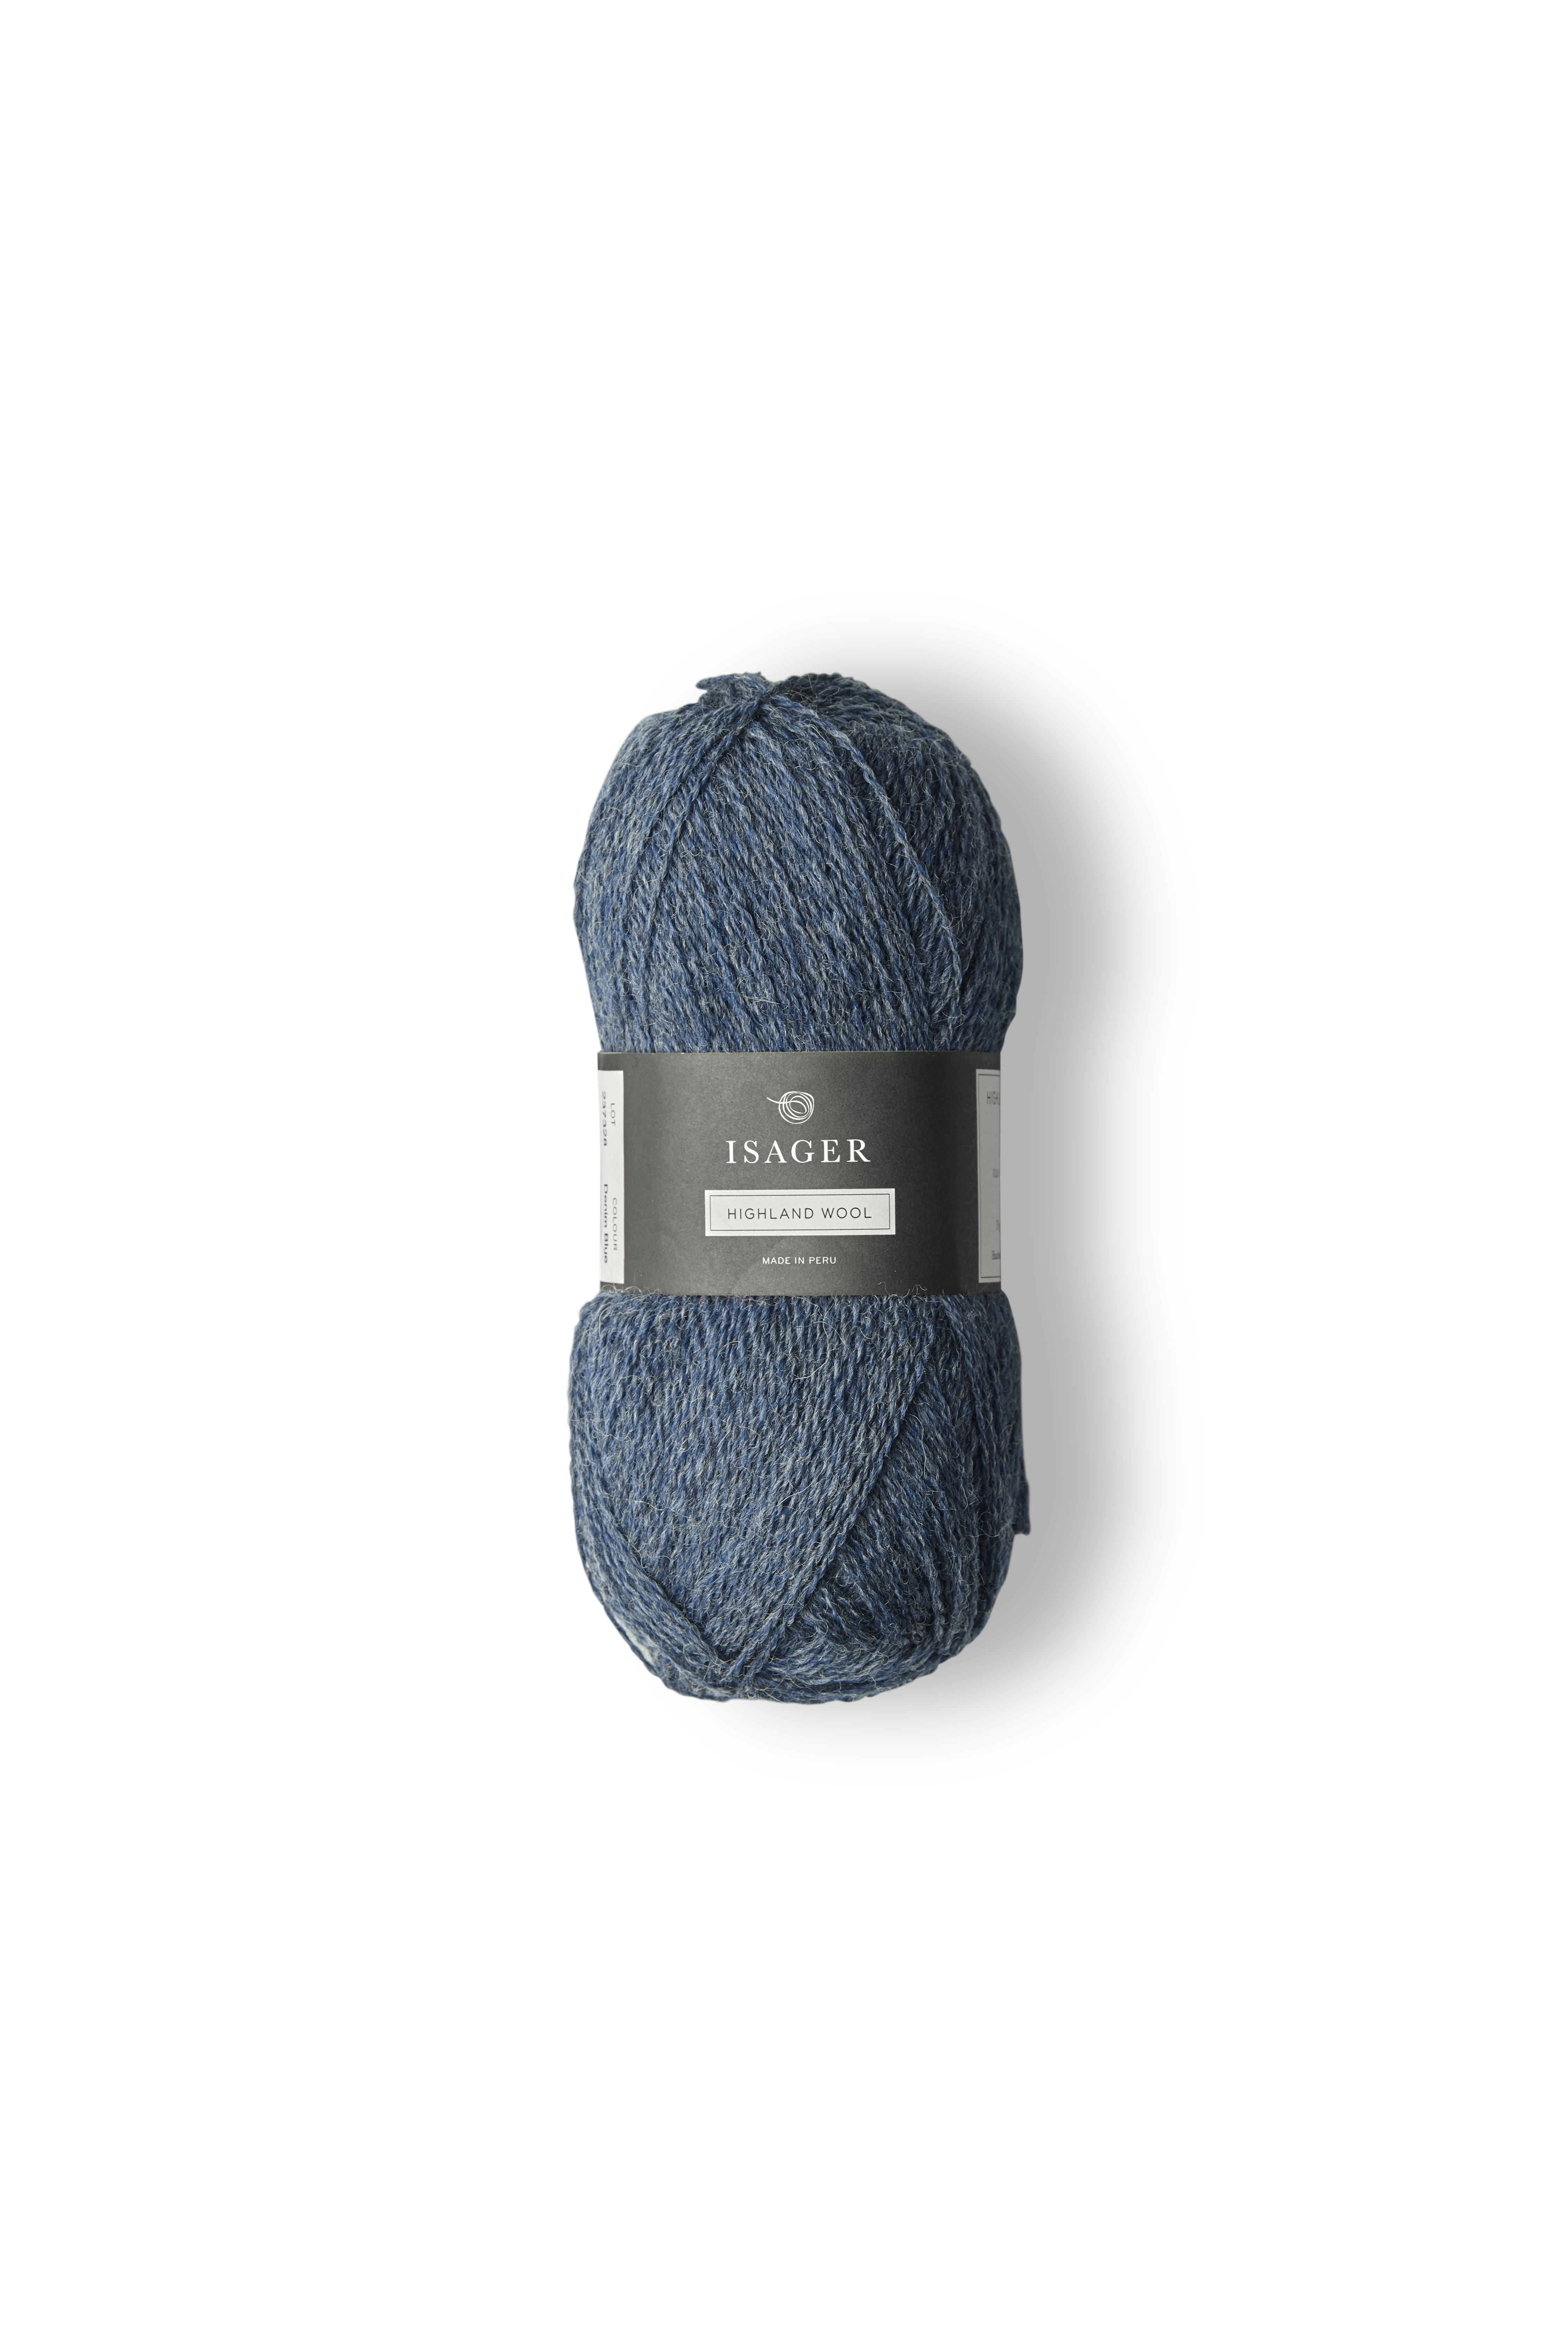 Highland Wool - Denim Blue